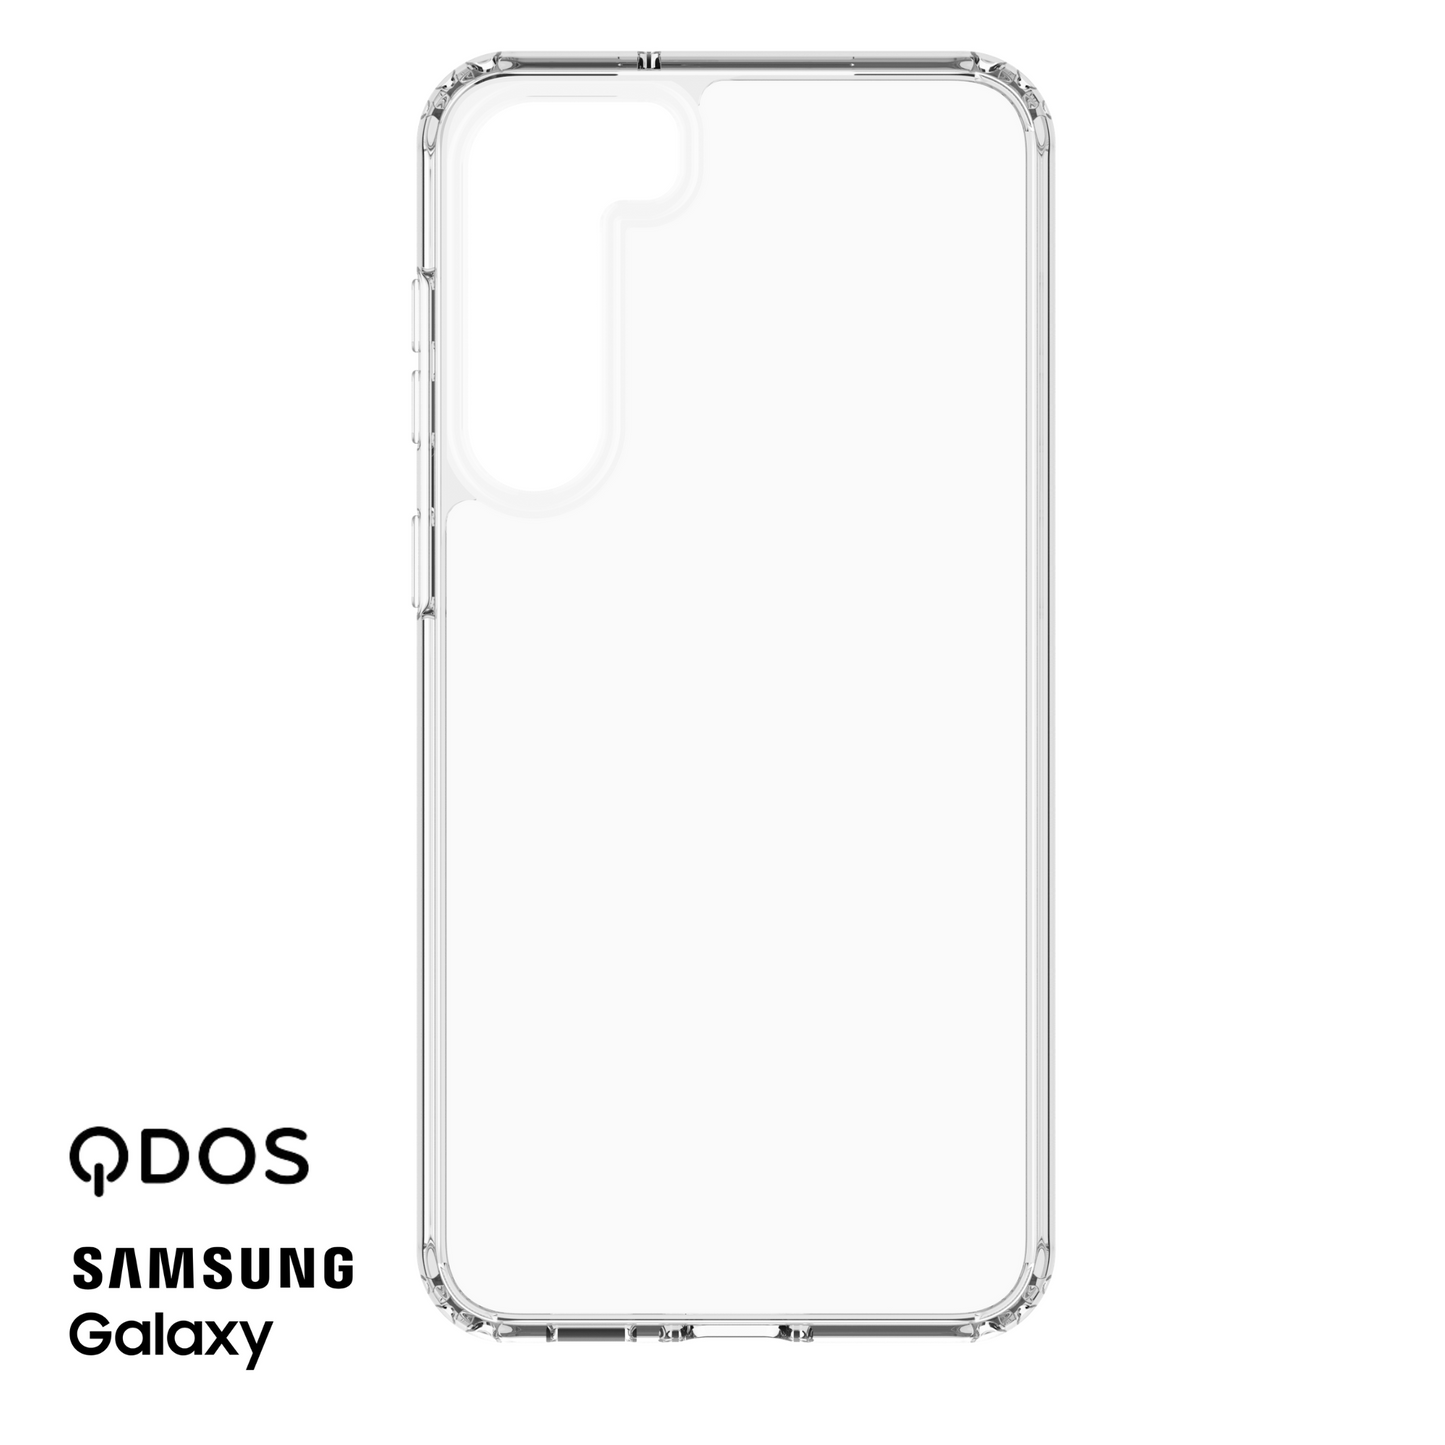 QDOS Hybrid Clear Phone Case For Samsung Galaxy